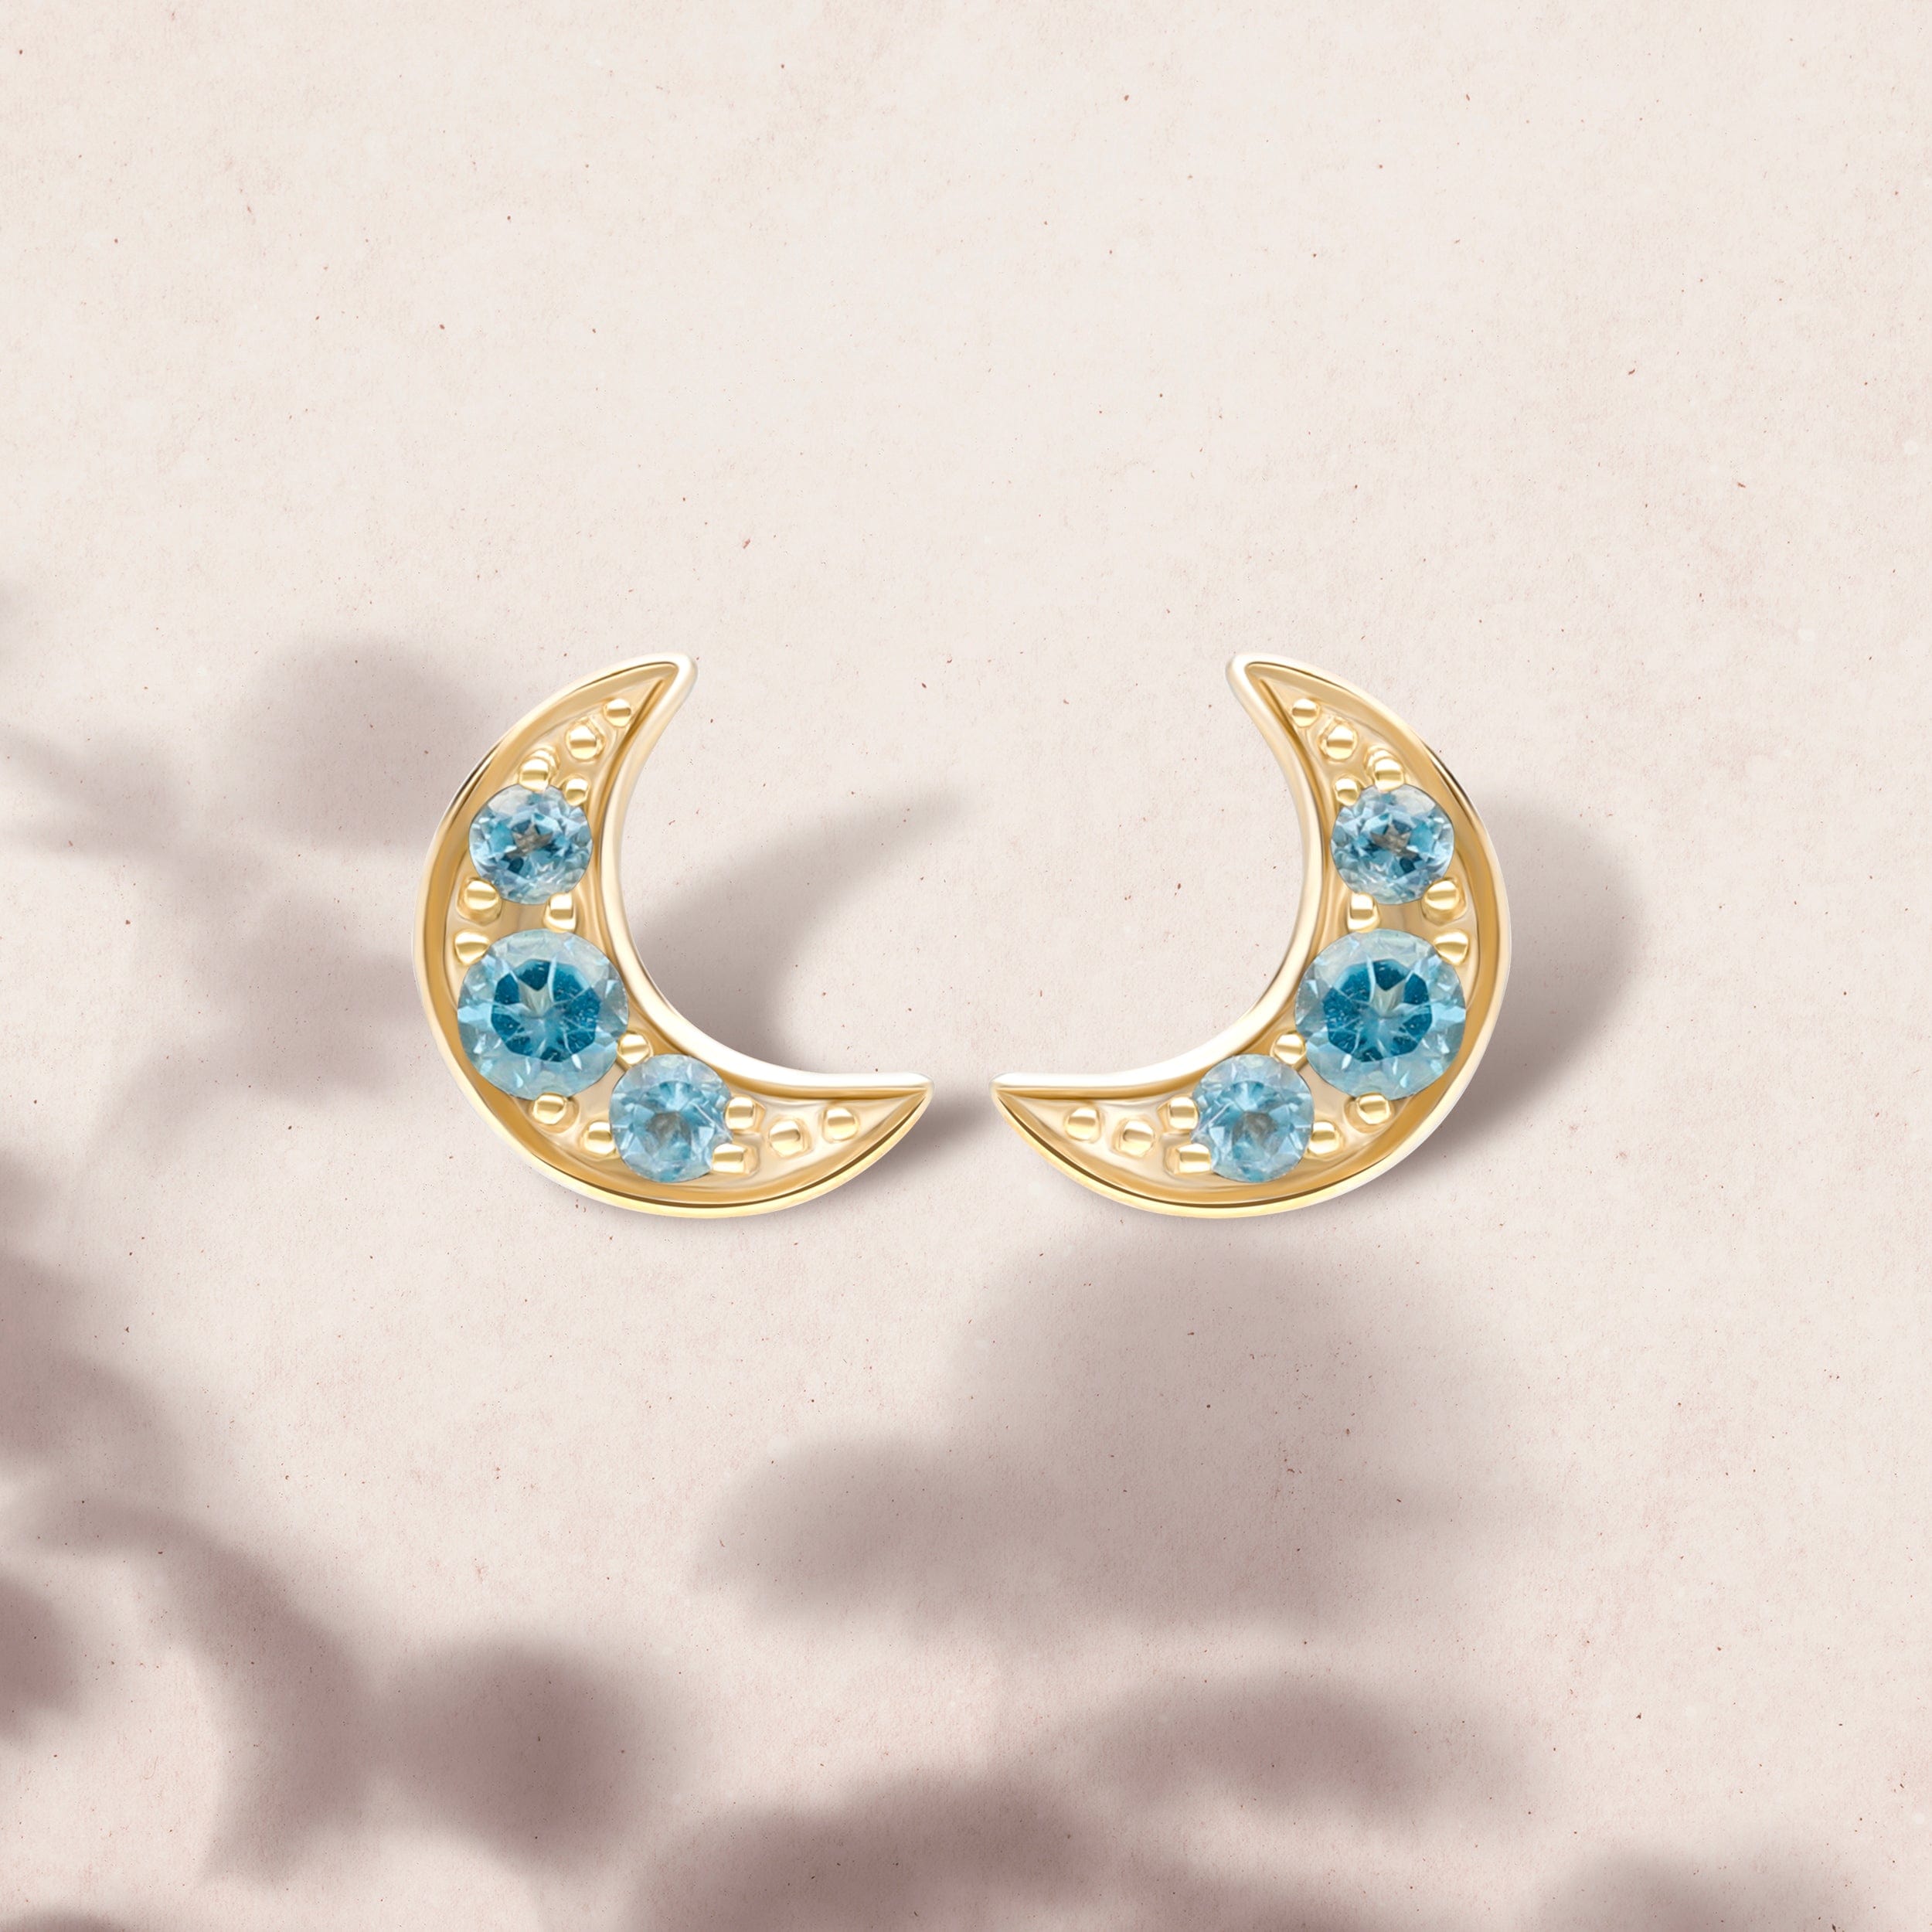 135E1819019 Night Sky London Blue Topaz Moon Stud Earrings in 9ct Yellow Gold On Model